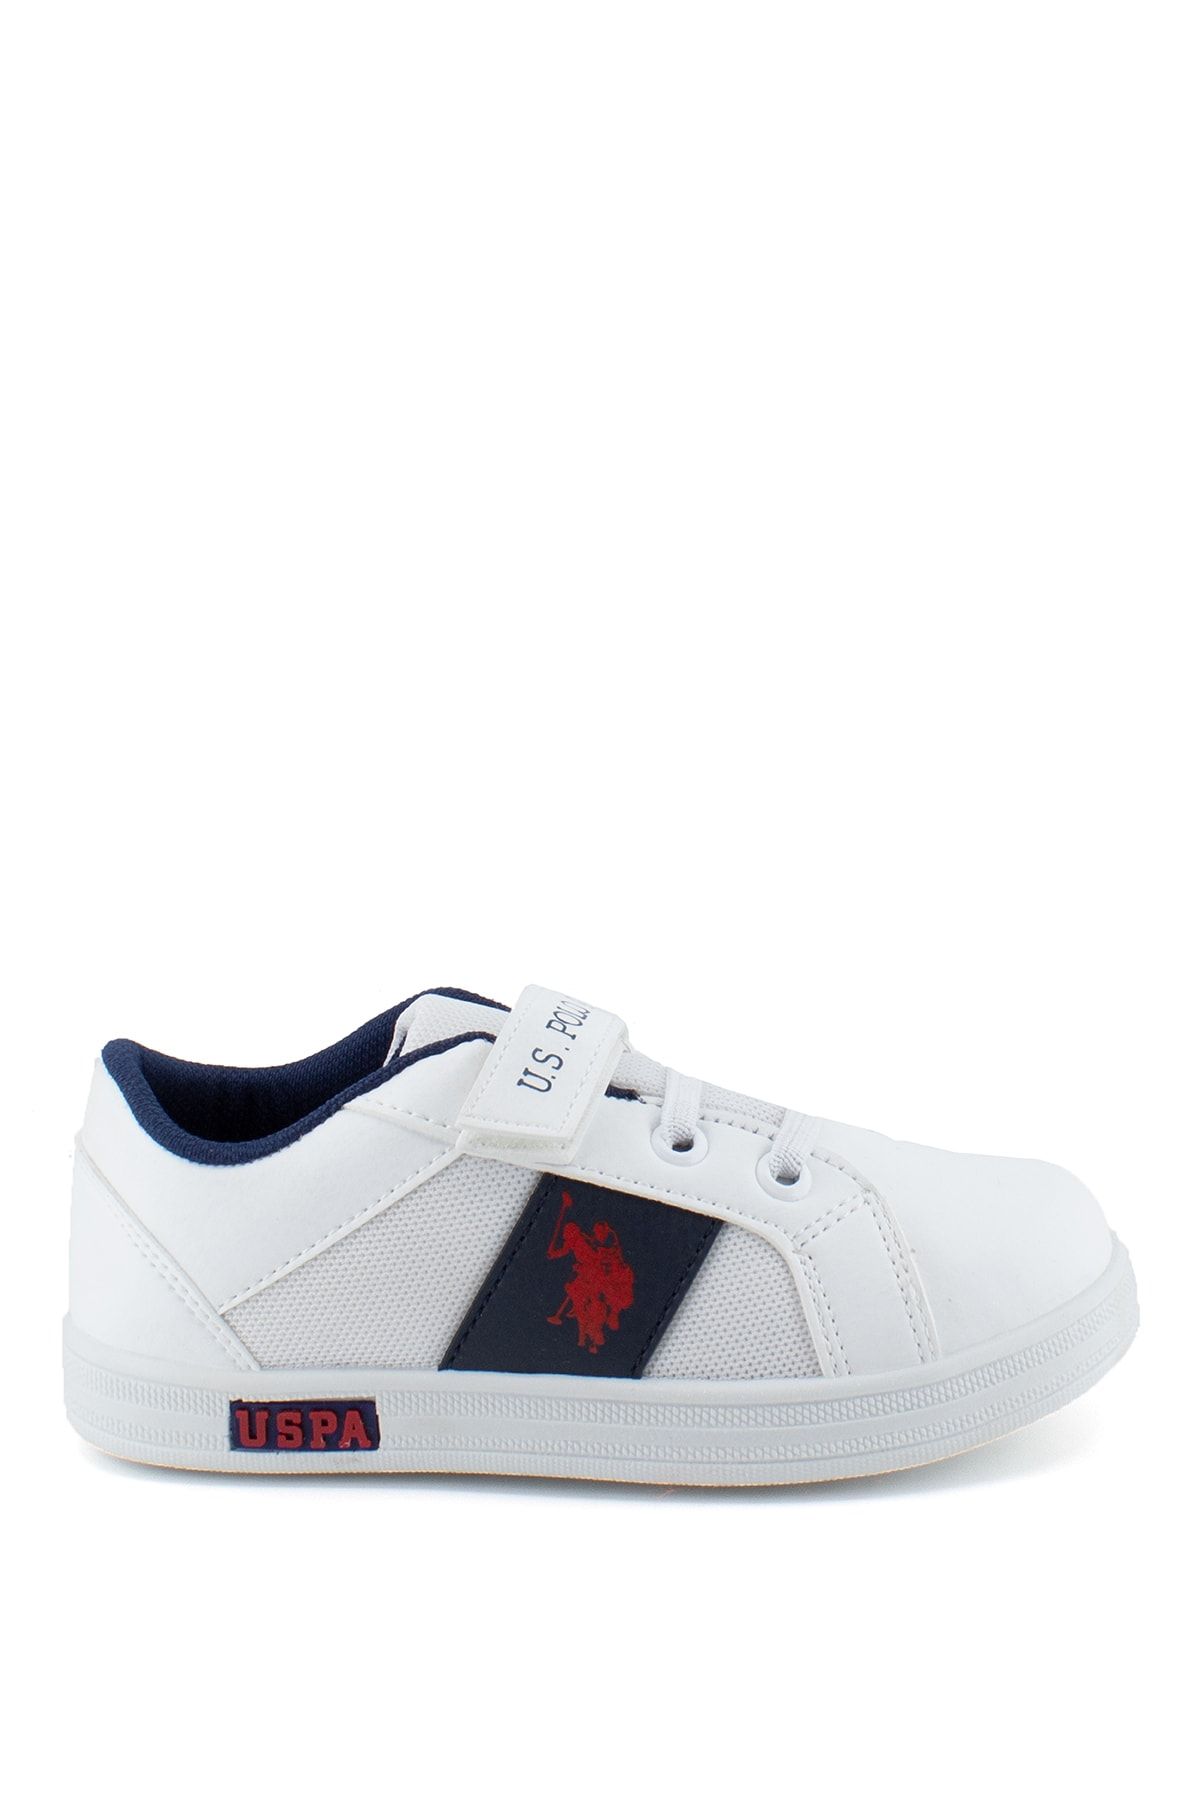 U.S. Polo Assn. CALLO Beyaz Erkek Çocuk Sneaker Ayakkabı 100504928